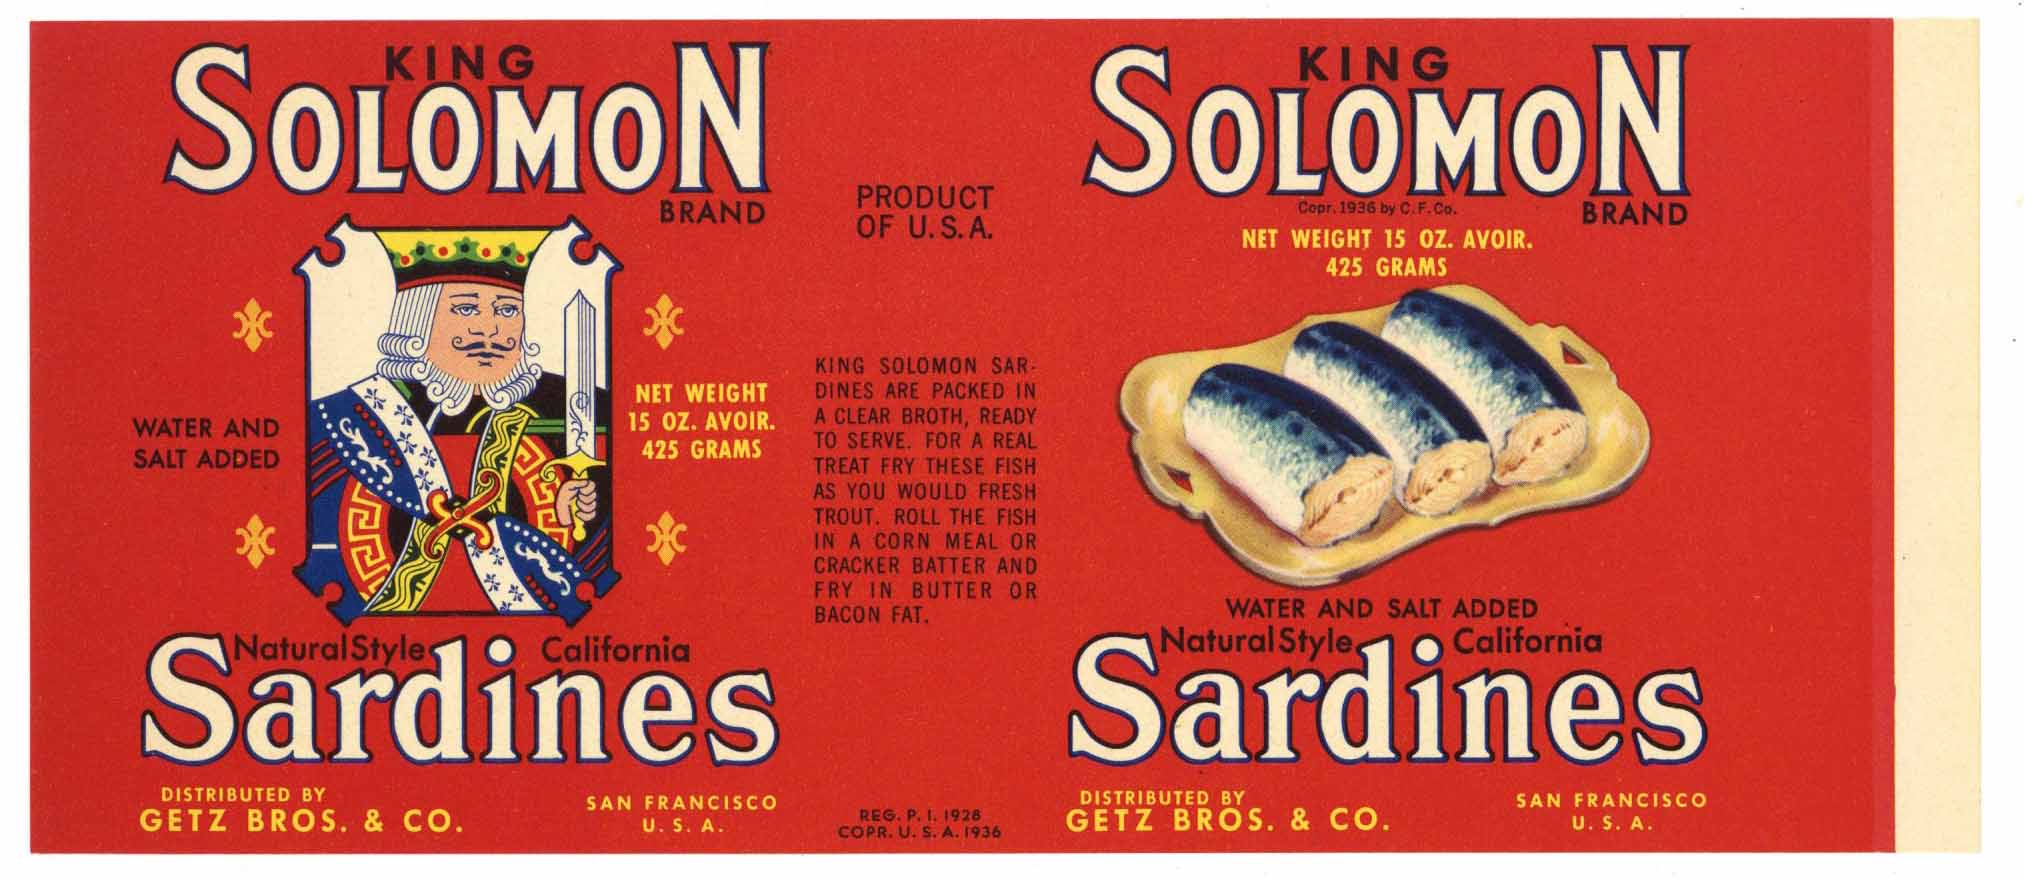 Solomon Brand Vintage Getz Bros Co. Sardine Can Label